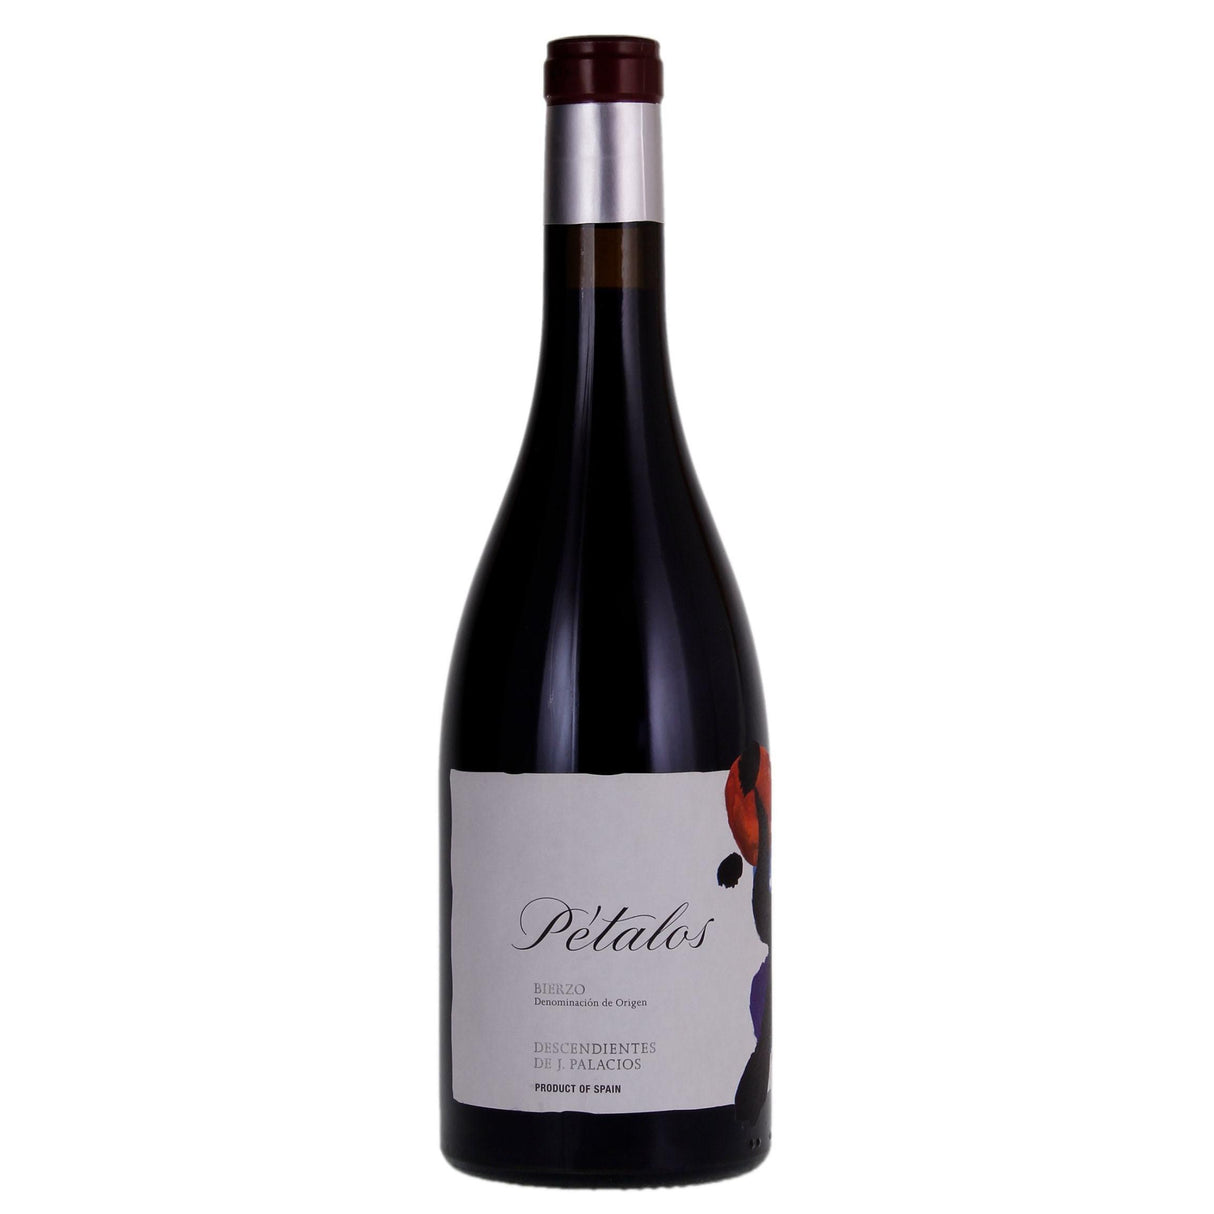 Descendientes de J. Palacios ‘Pétalos’ Mencía 1.5litre magnum 2018-Red Wine-World Wine